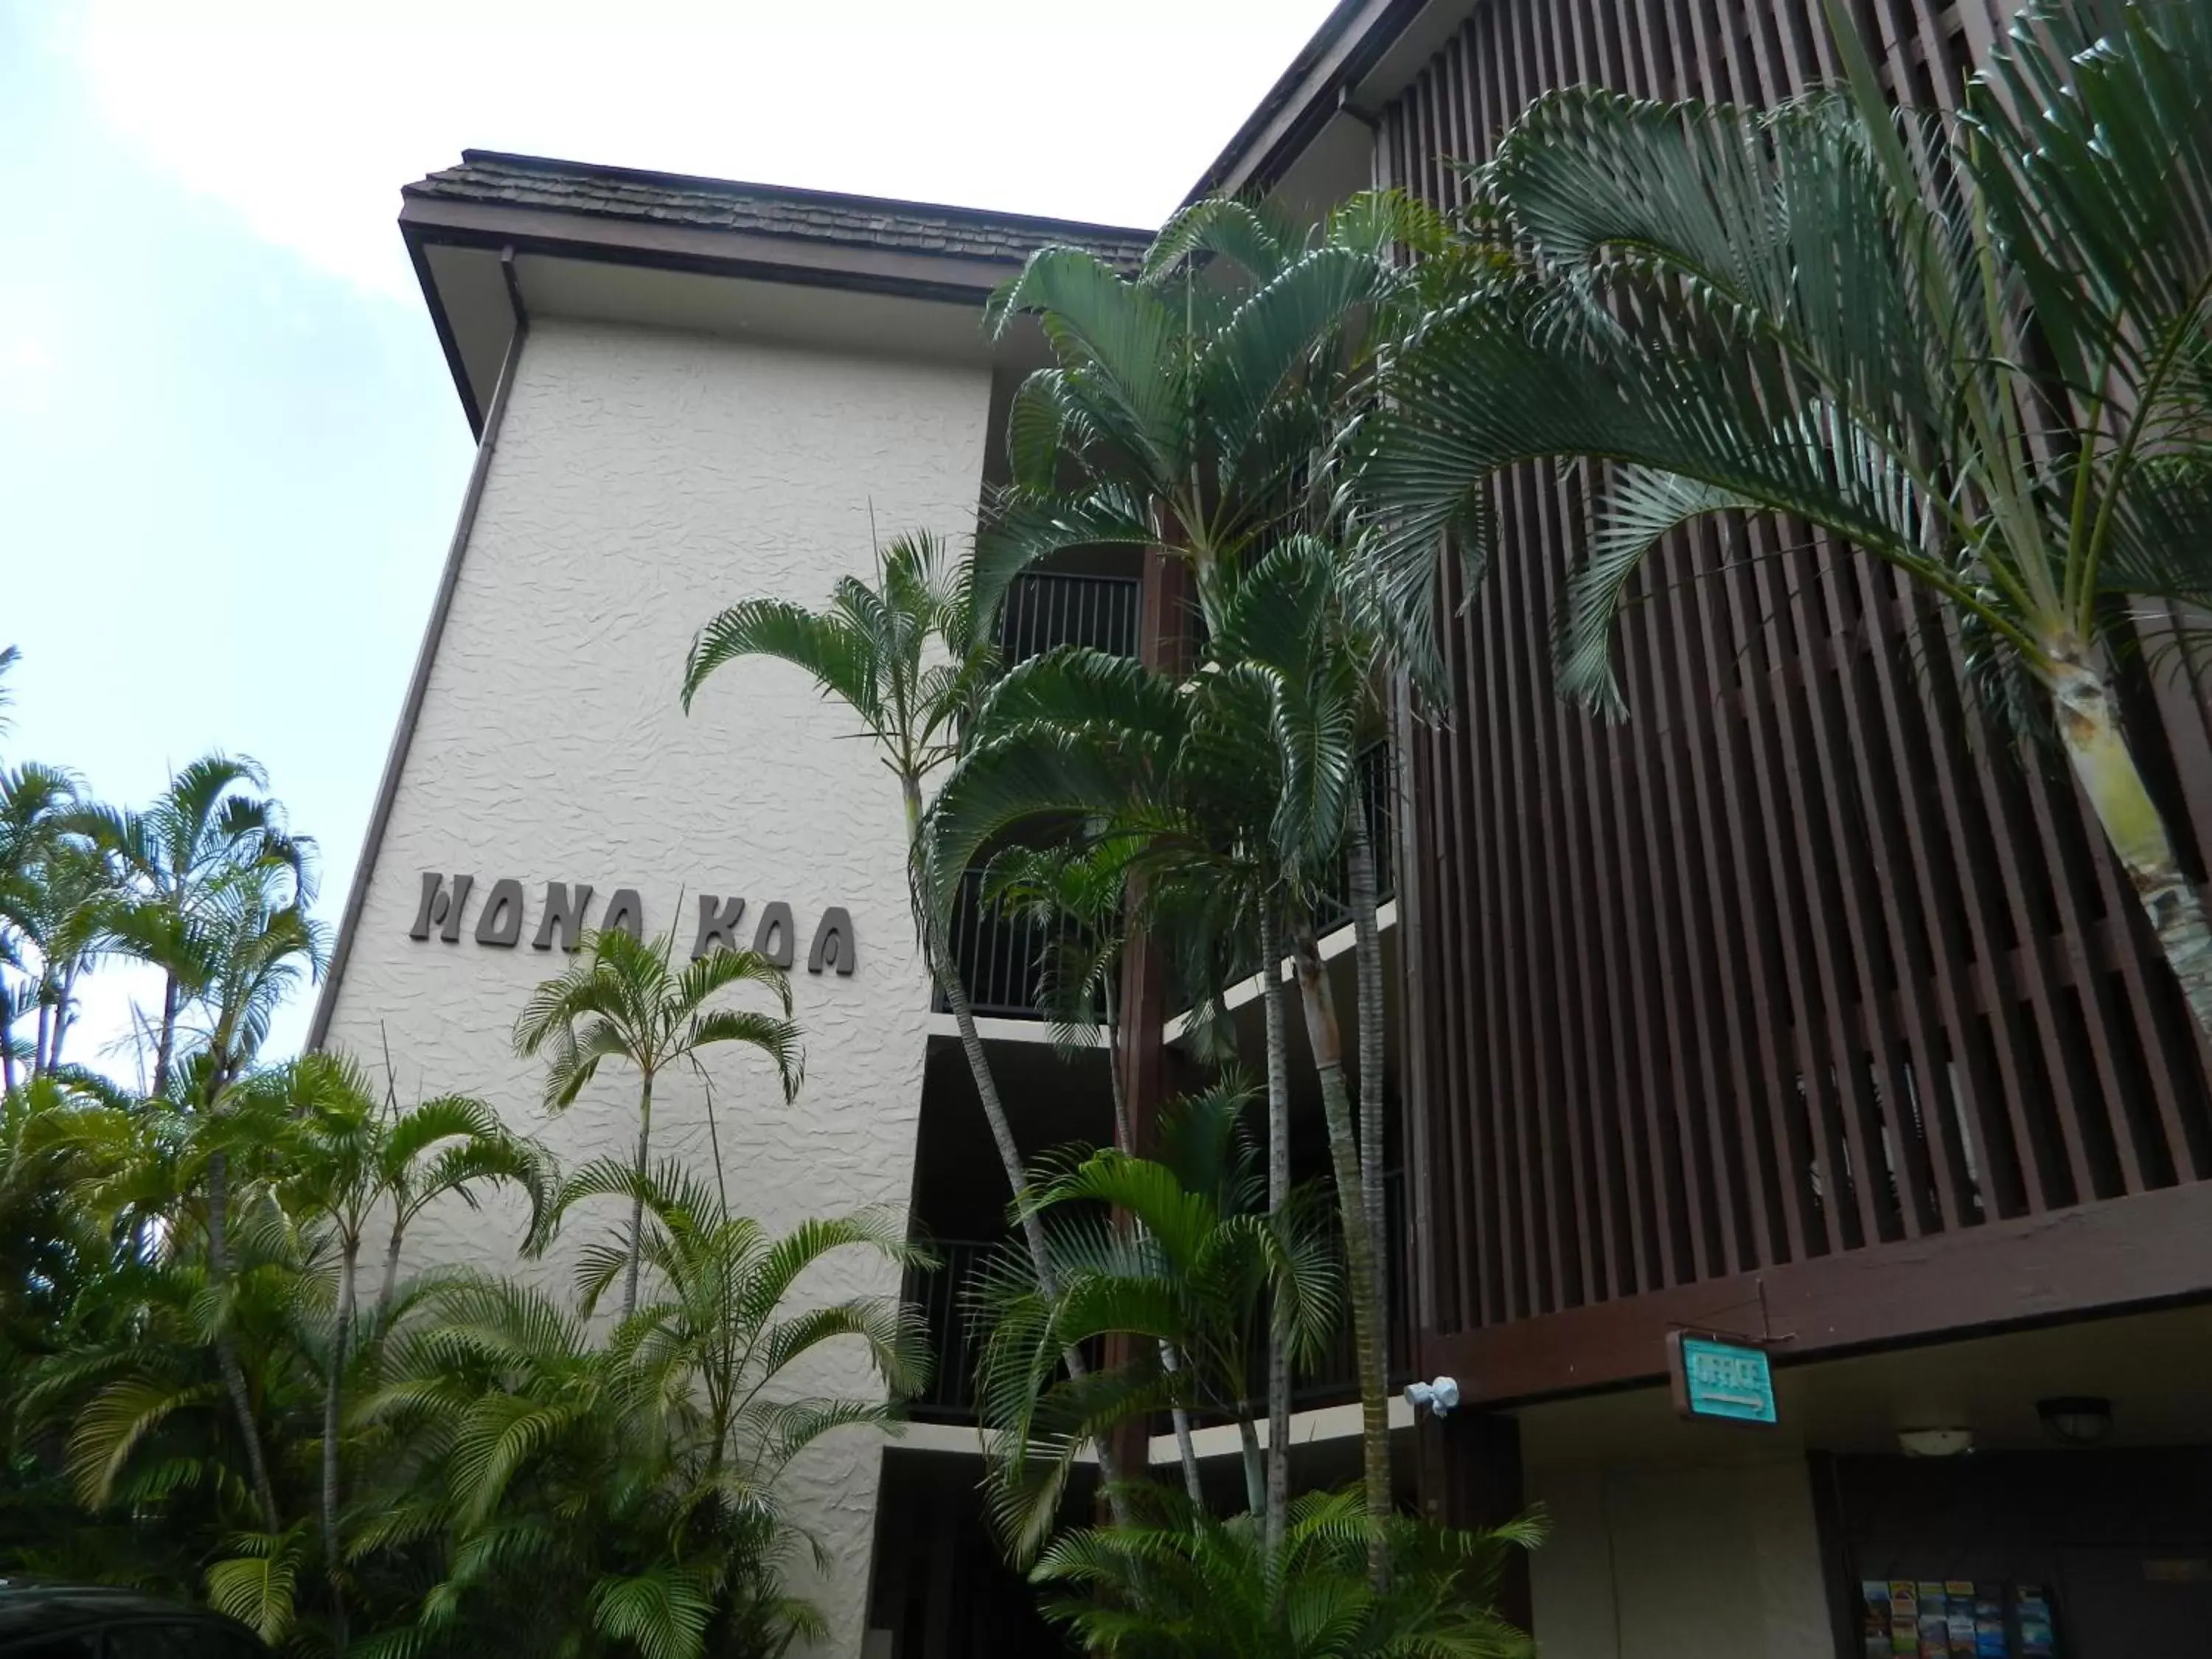 Property Building in Hono Koa Vacation Club